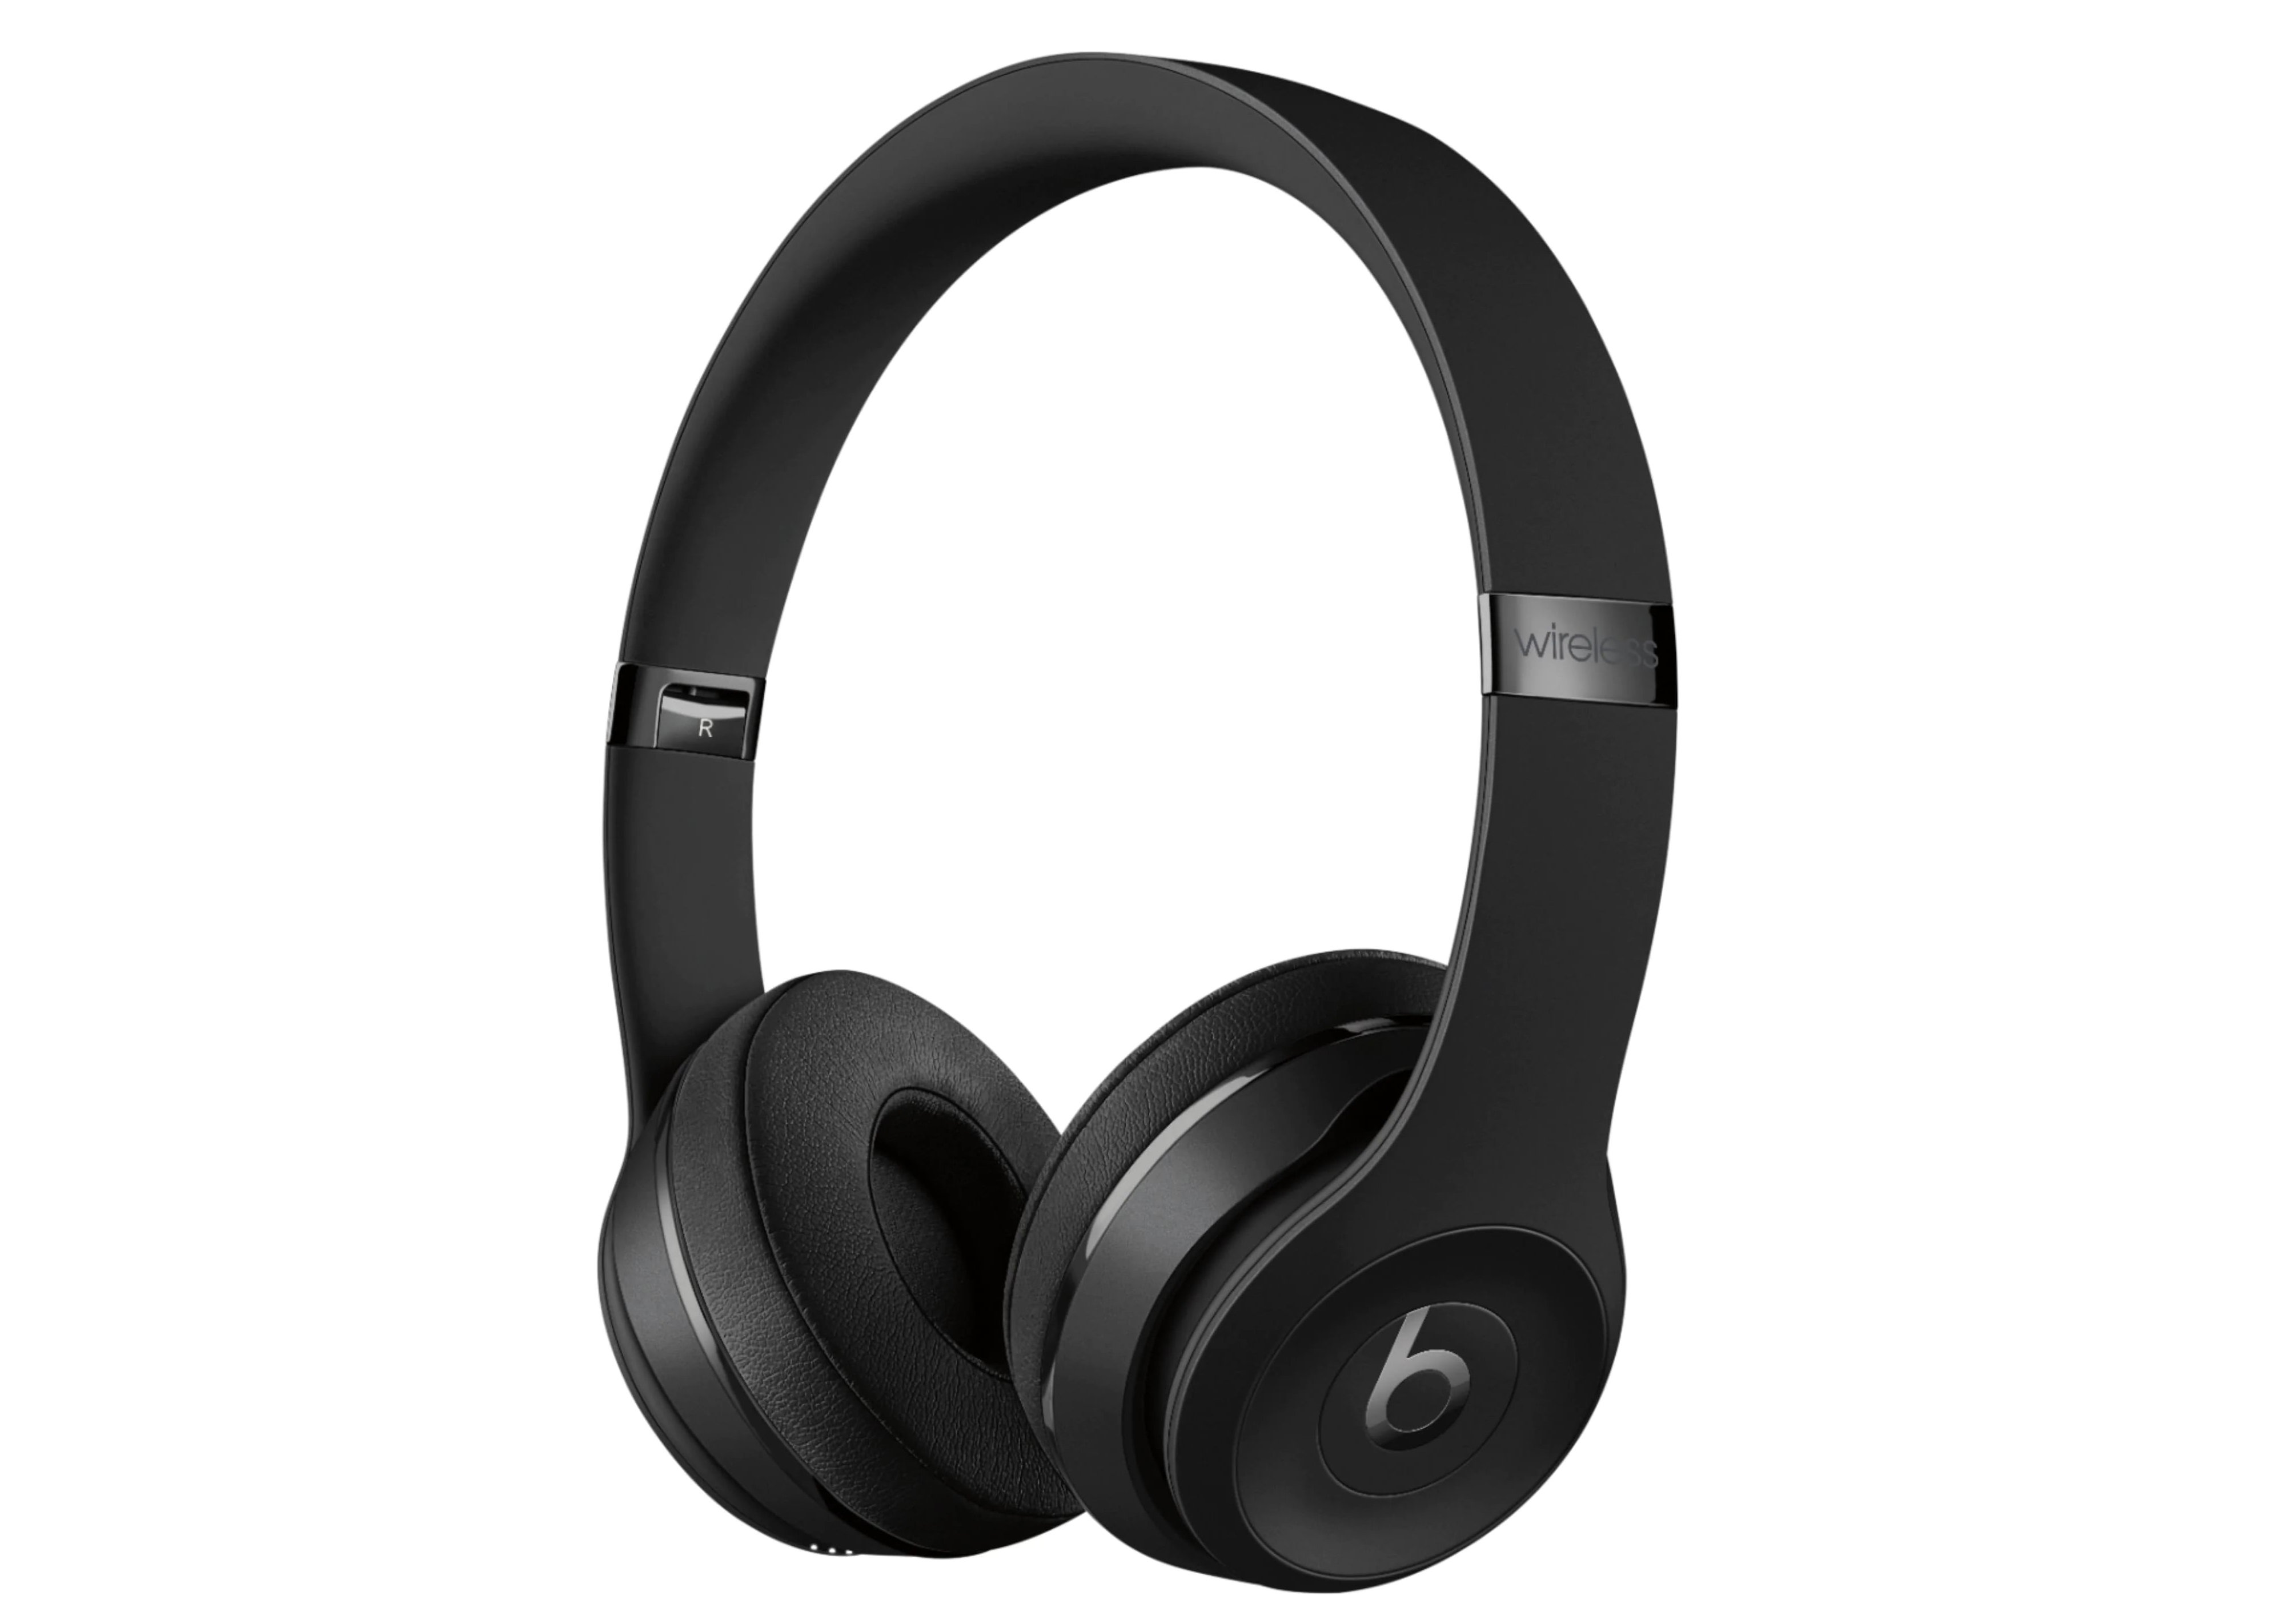 [해외] Beats by Dr. Dre Solo3 The Icon Collection Wireless On-Ear Headphones MX432LL/A Matte Black 131342